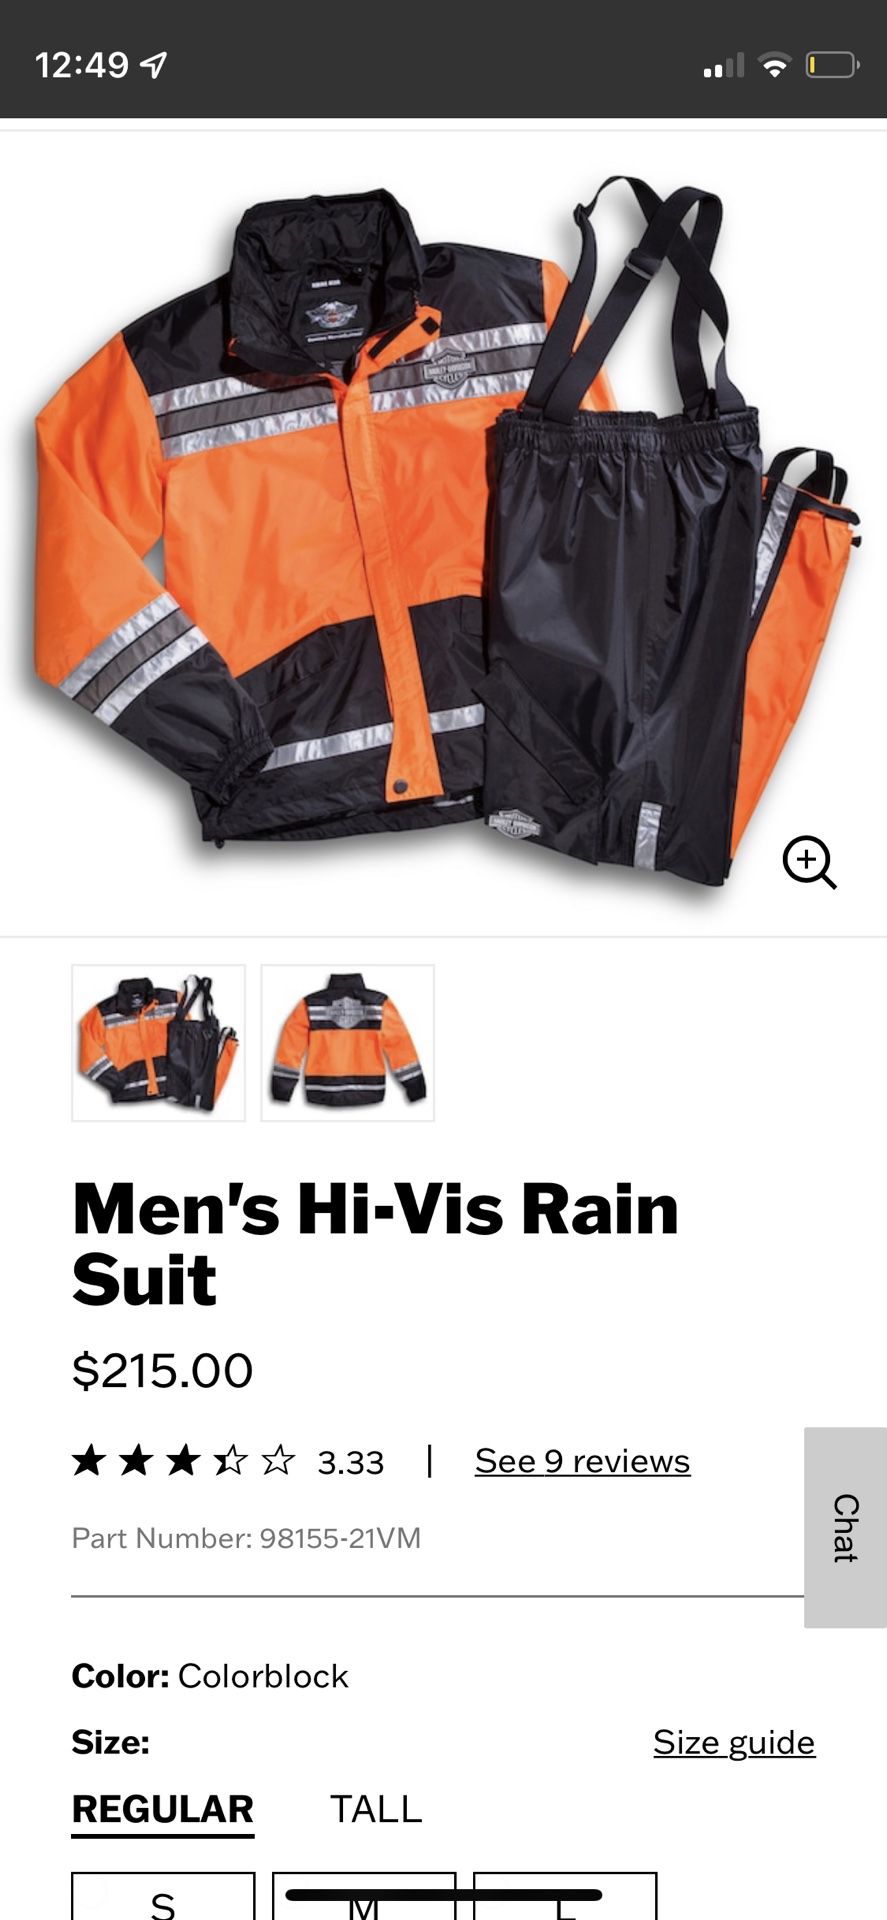 Harley Davidson Hi-Vis Rain Suit